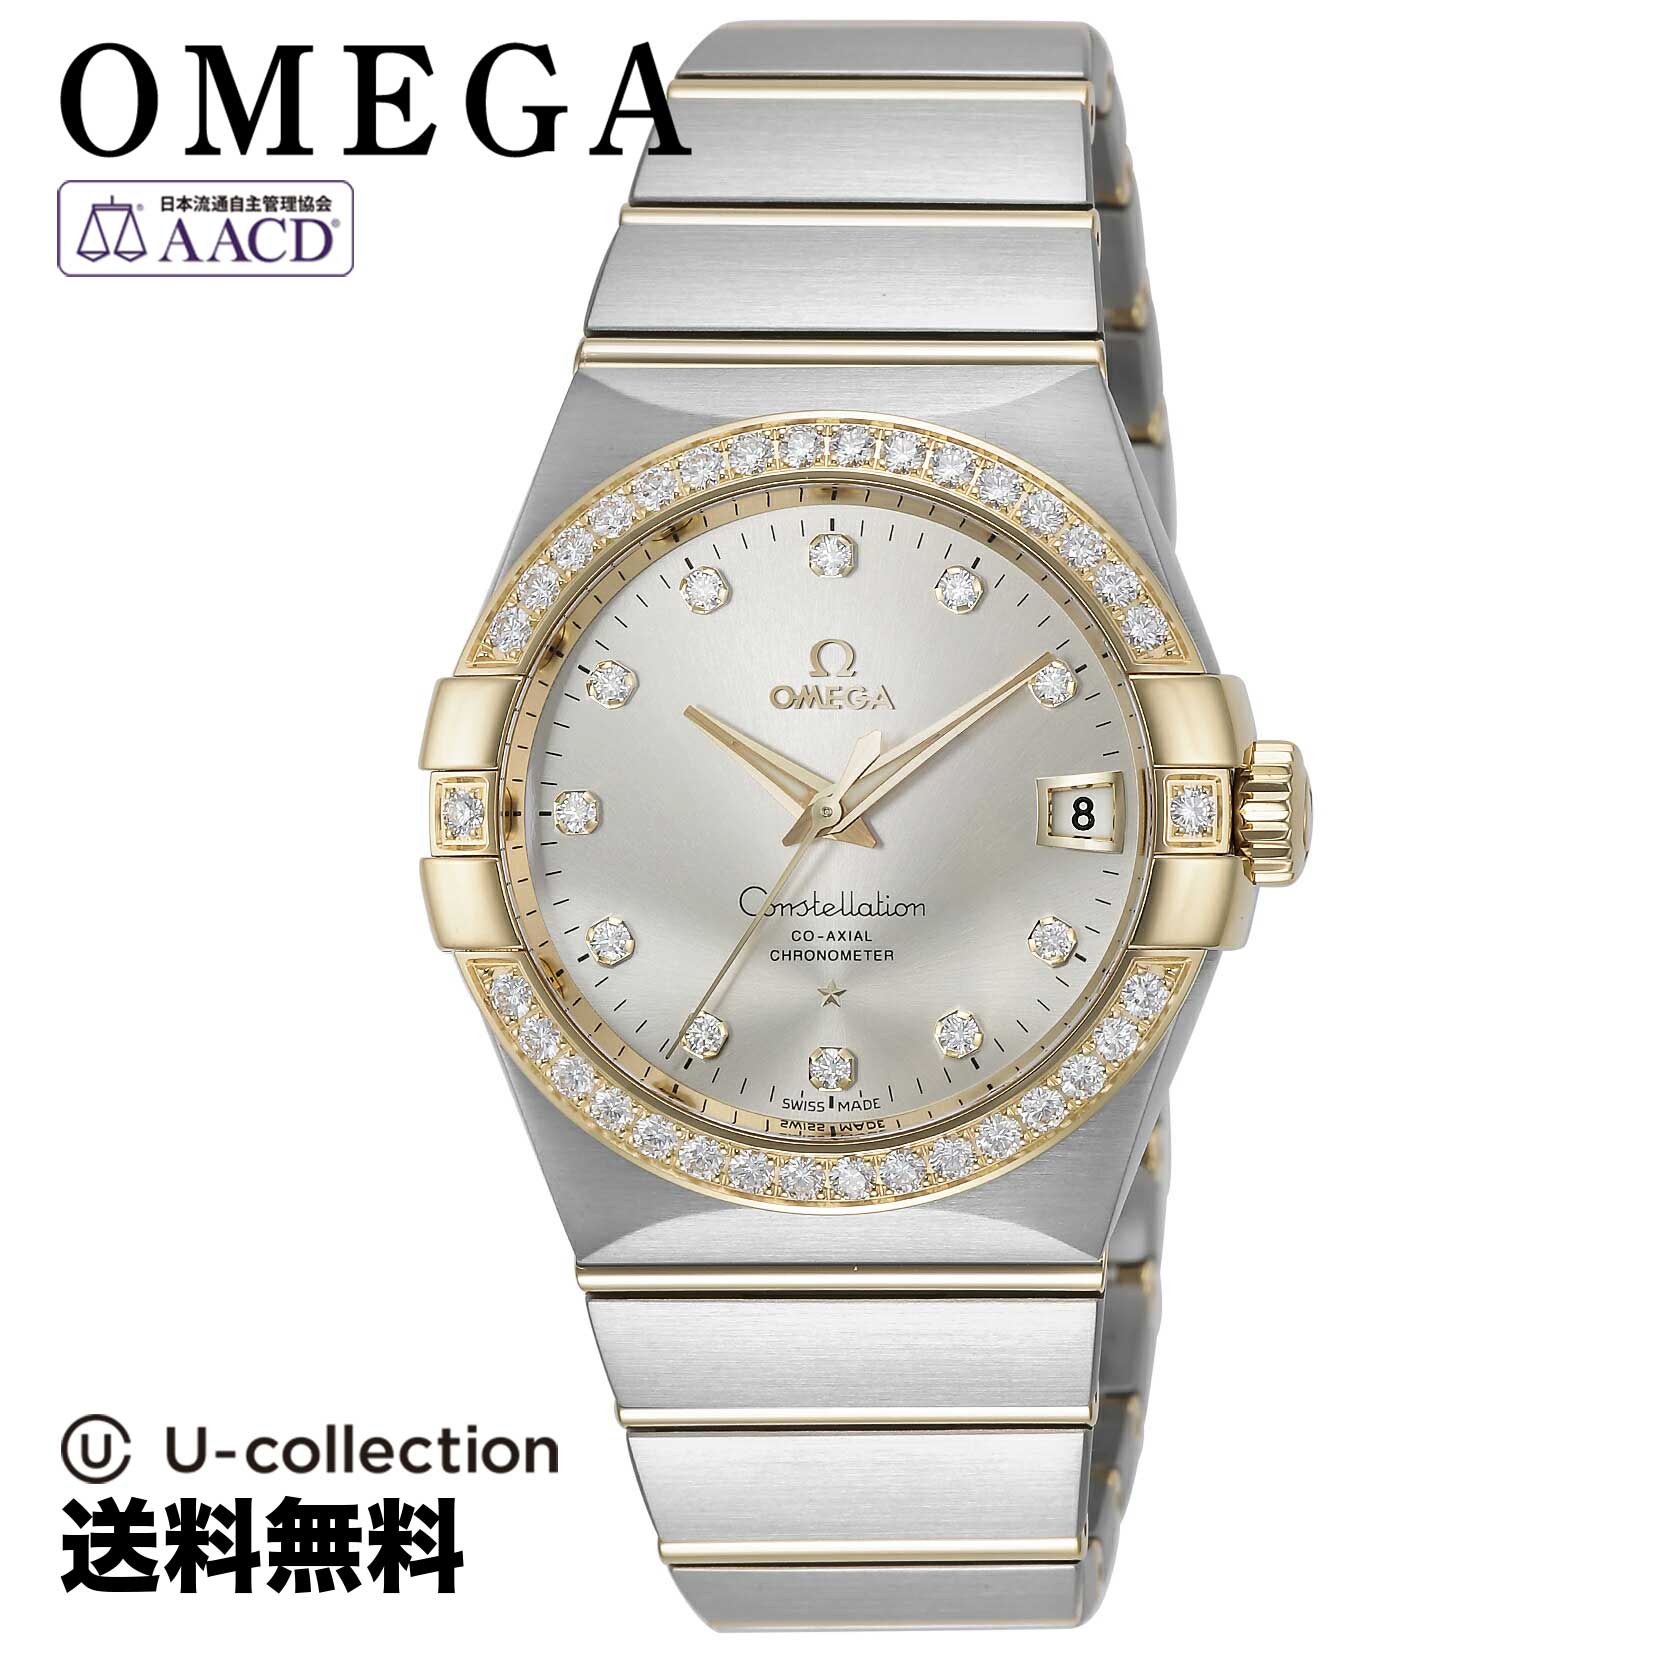 オメガ【腕時計】 OMEGA(オメガ) Constellation / コンステレーション メンズ シルバー コーアクシャル自動巻 123.25.38.21.52.002 時計 ブランド